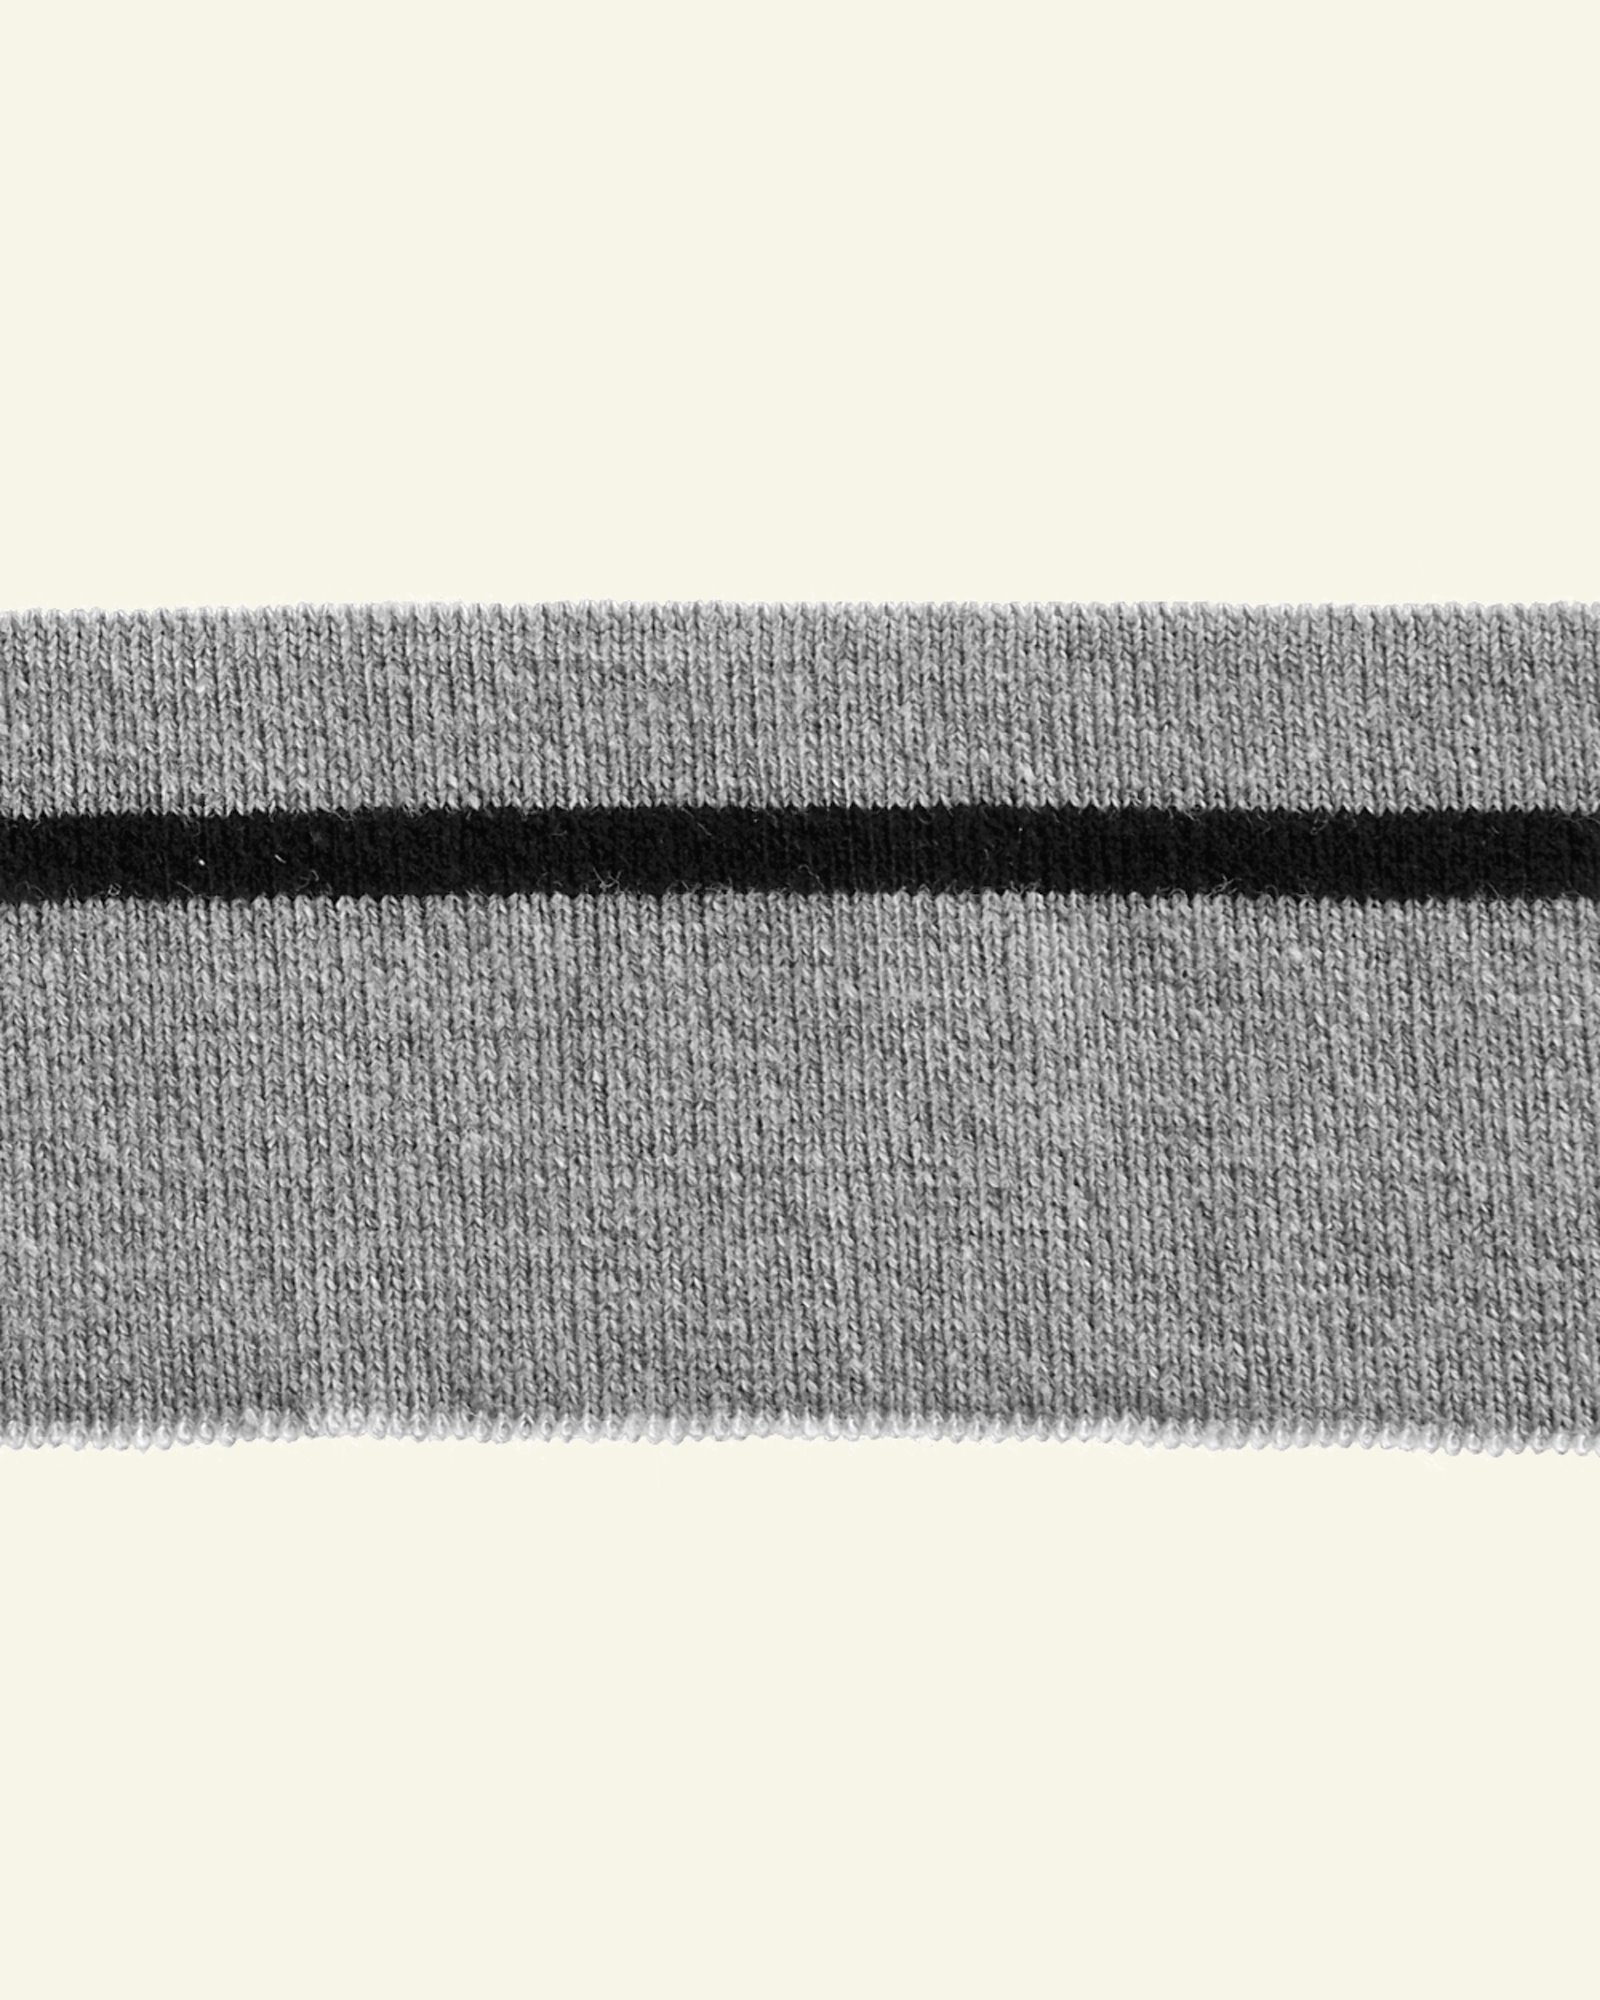 1x1 ribb 4,8x100cm grå melert/sort 1stk 96112_pack